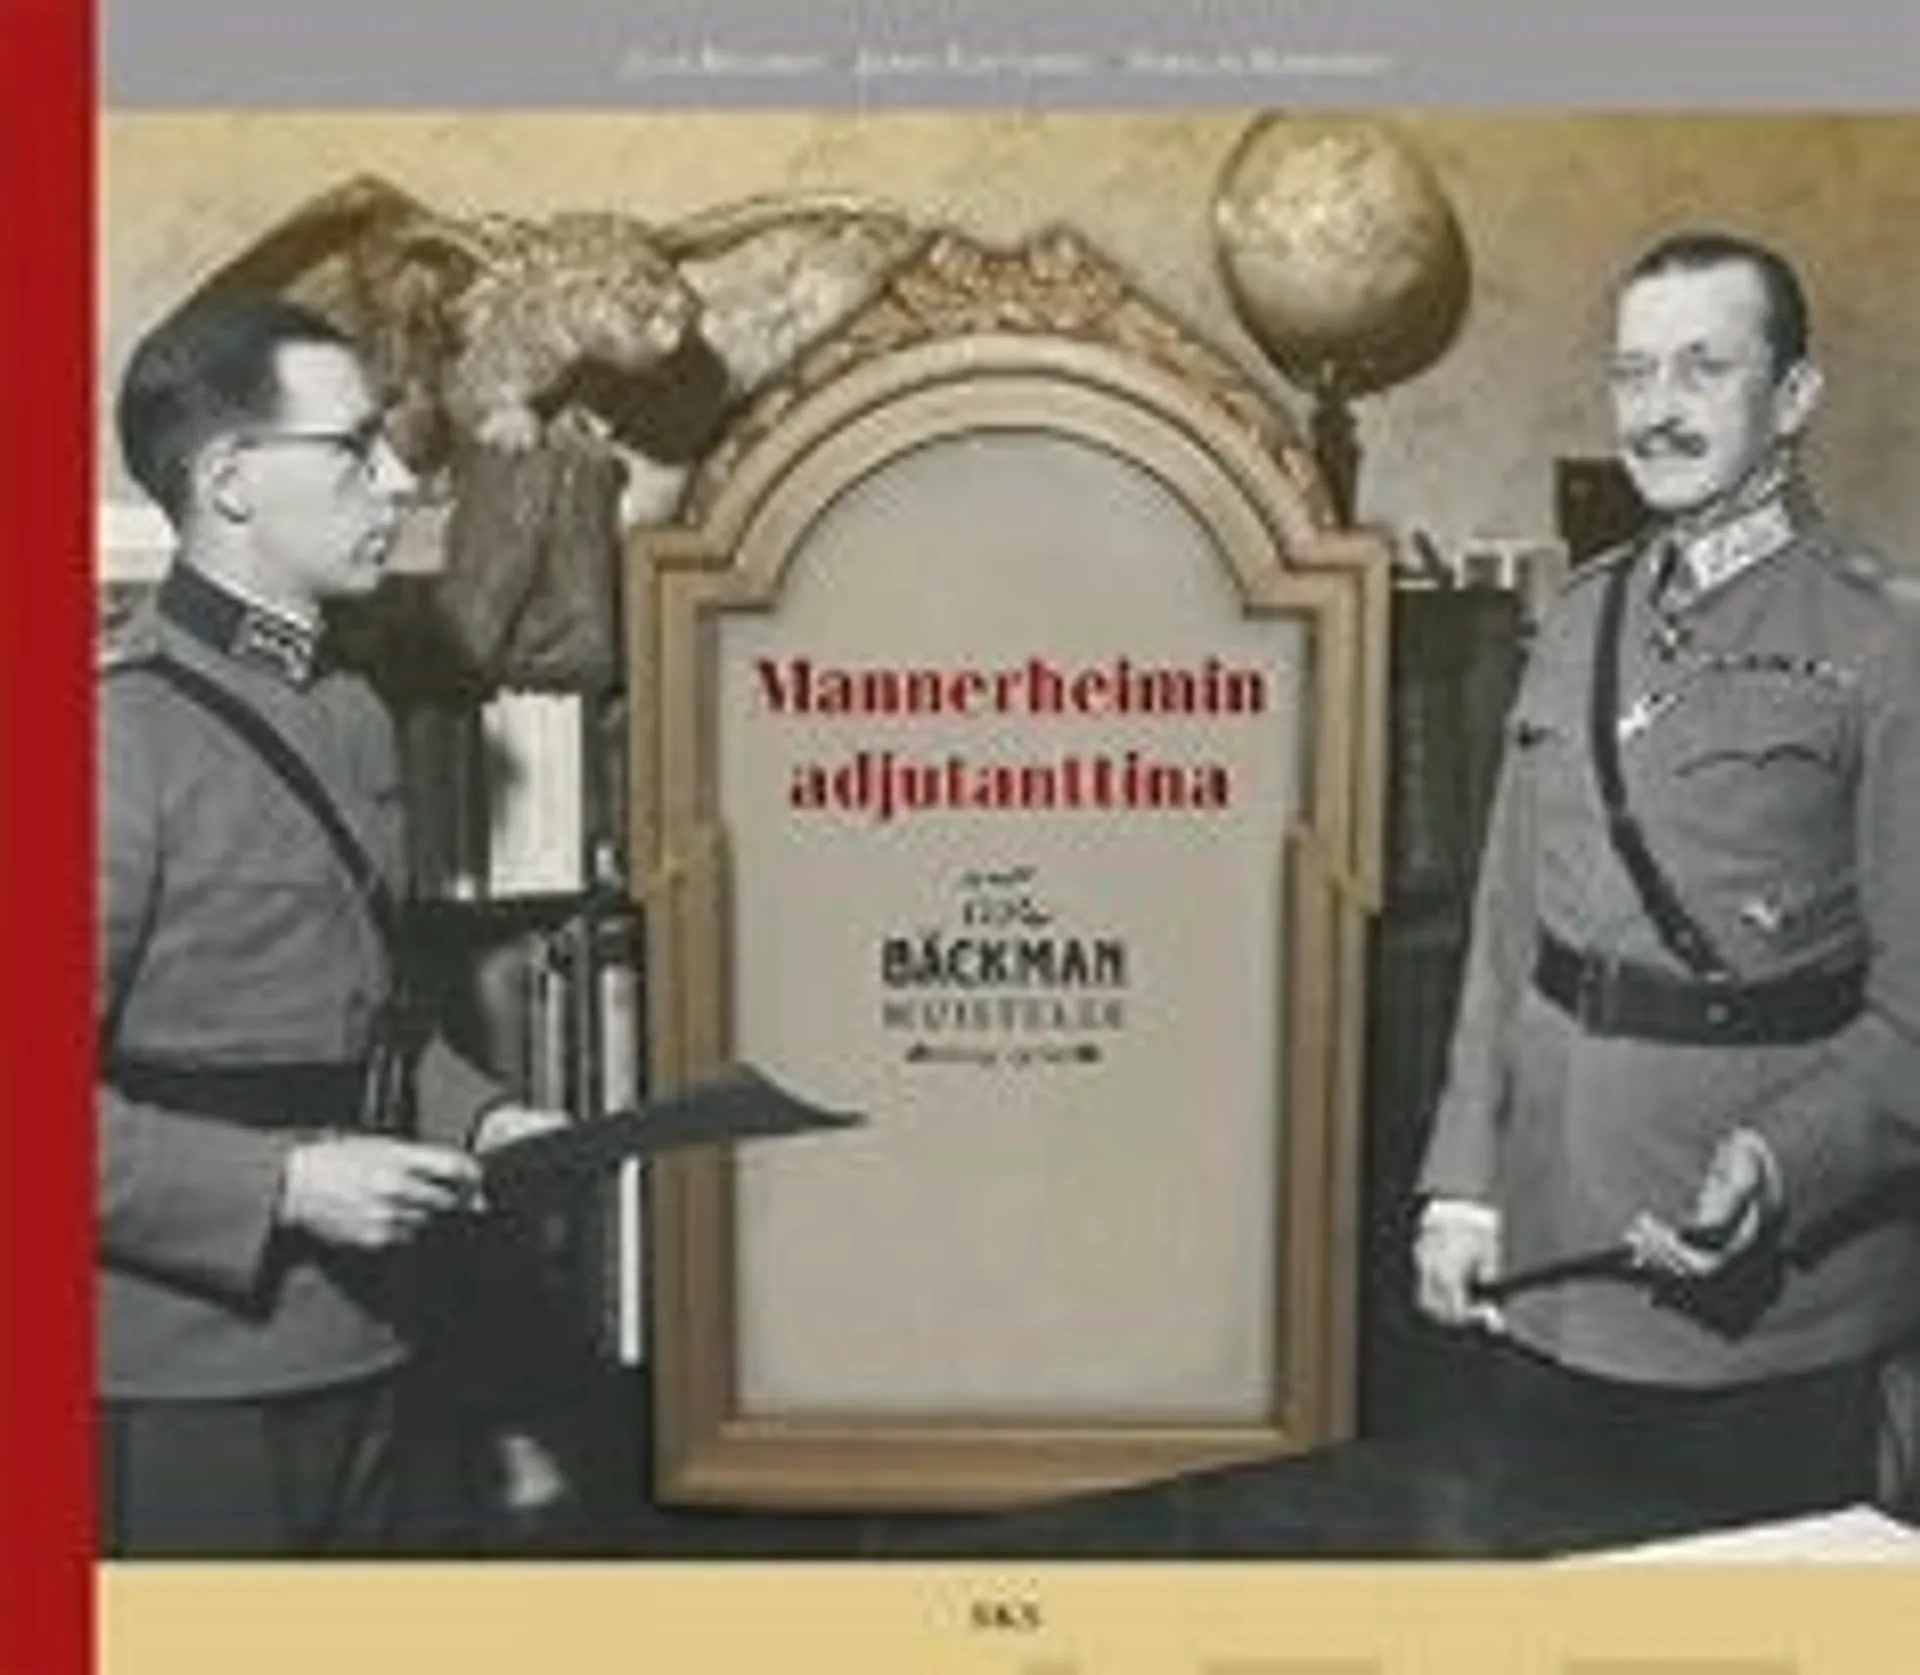 Bäckman, Mannerheimin adjutanttina